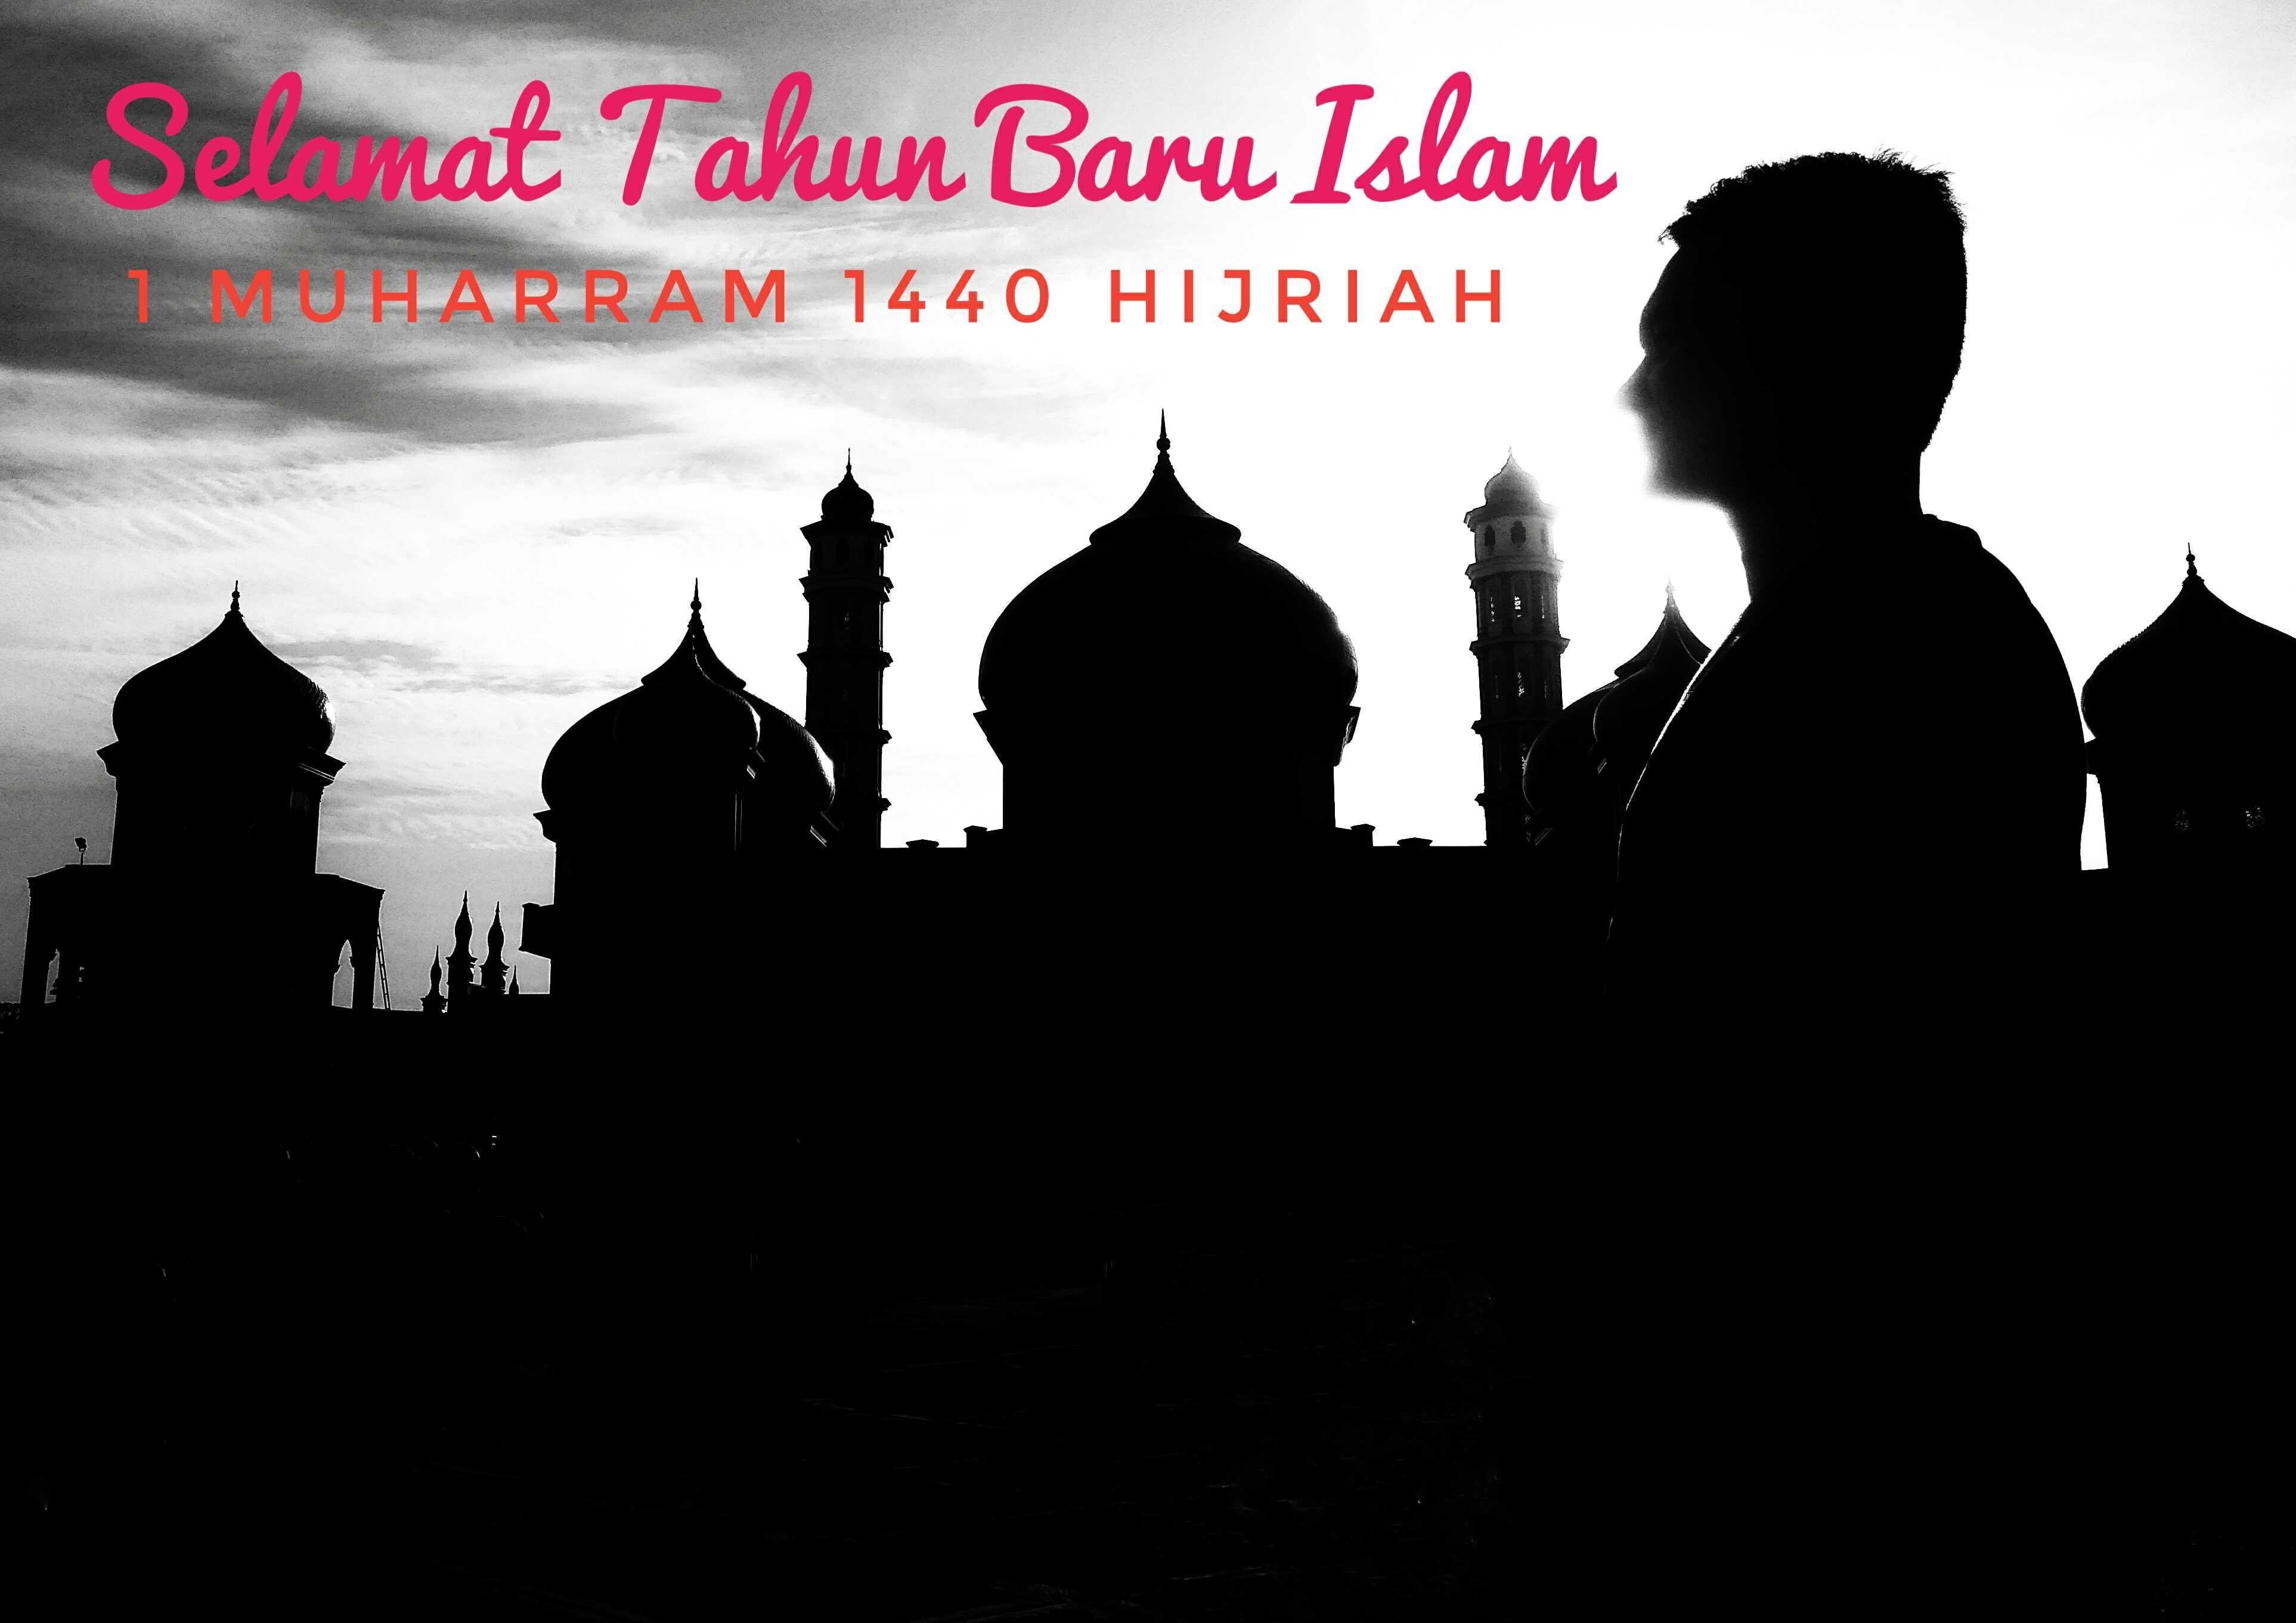 Happy Islamic New Year 1 Muharram 1440 Hijriah Cerita Silampung